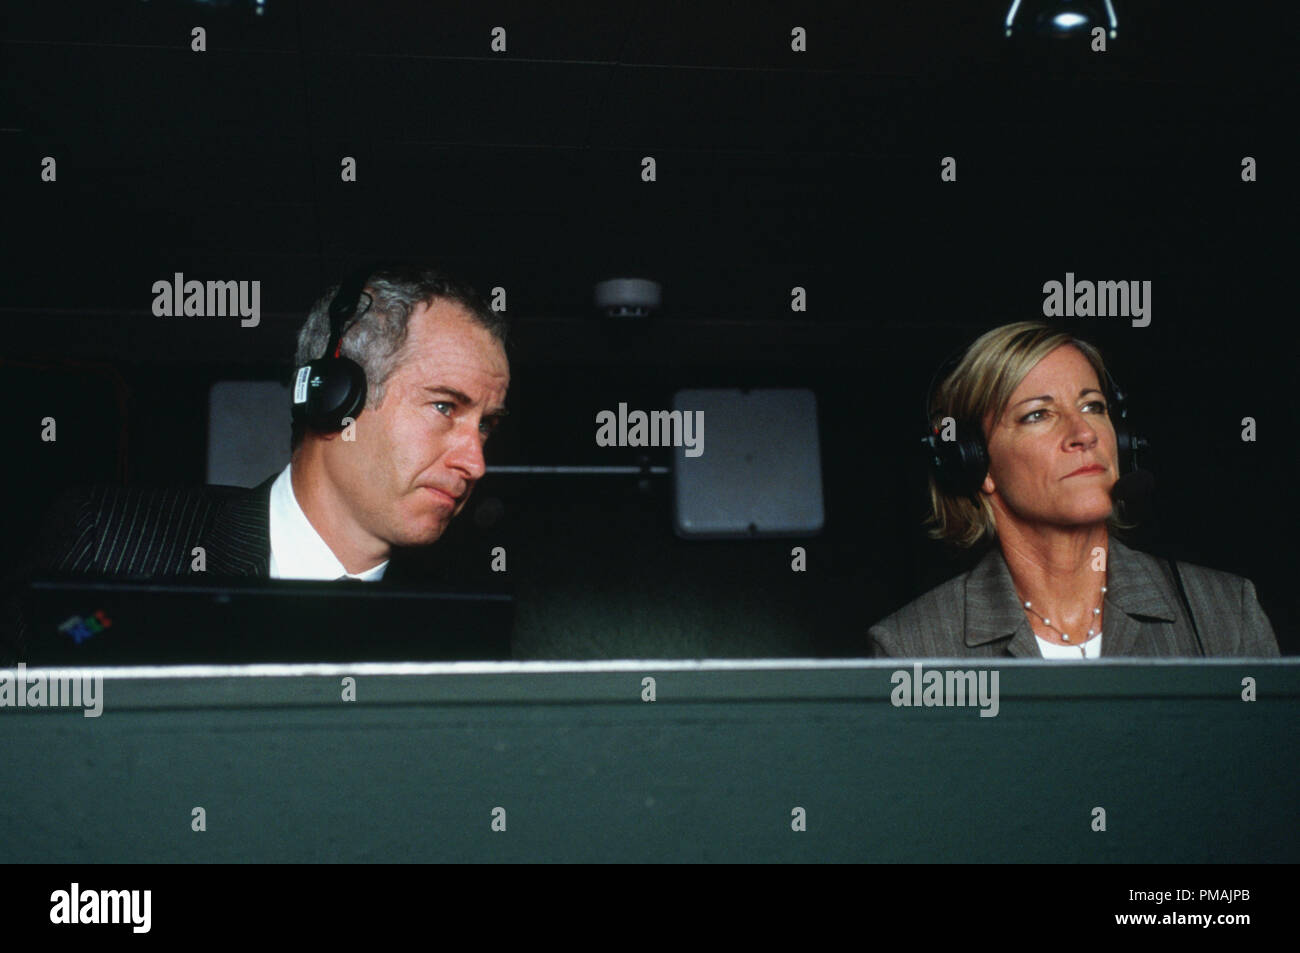 Wimbledon Tennis Champions und Kommentatoren JOHN McENROE und CHRIS EVERT erscheinen als sich selbst in der Arbeit Titel Filme' romantische Komödie Wimbledon. (2004) Stockfoto